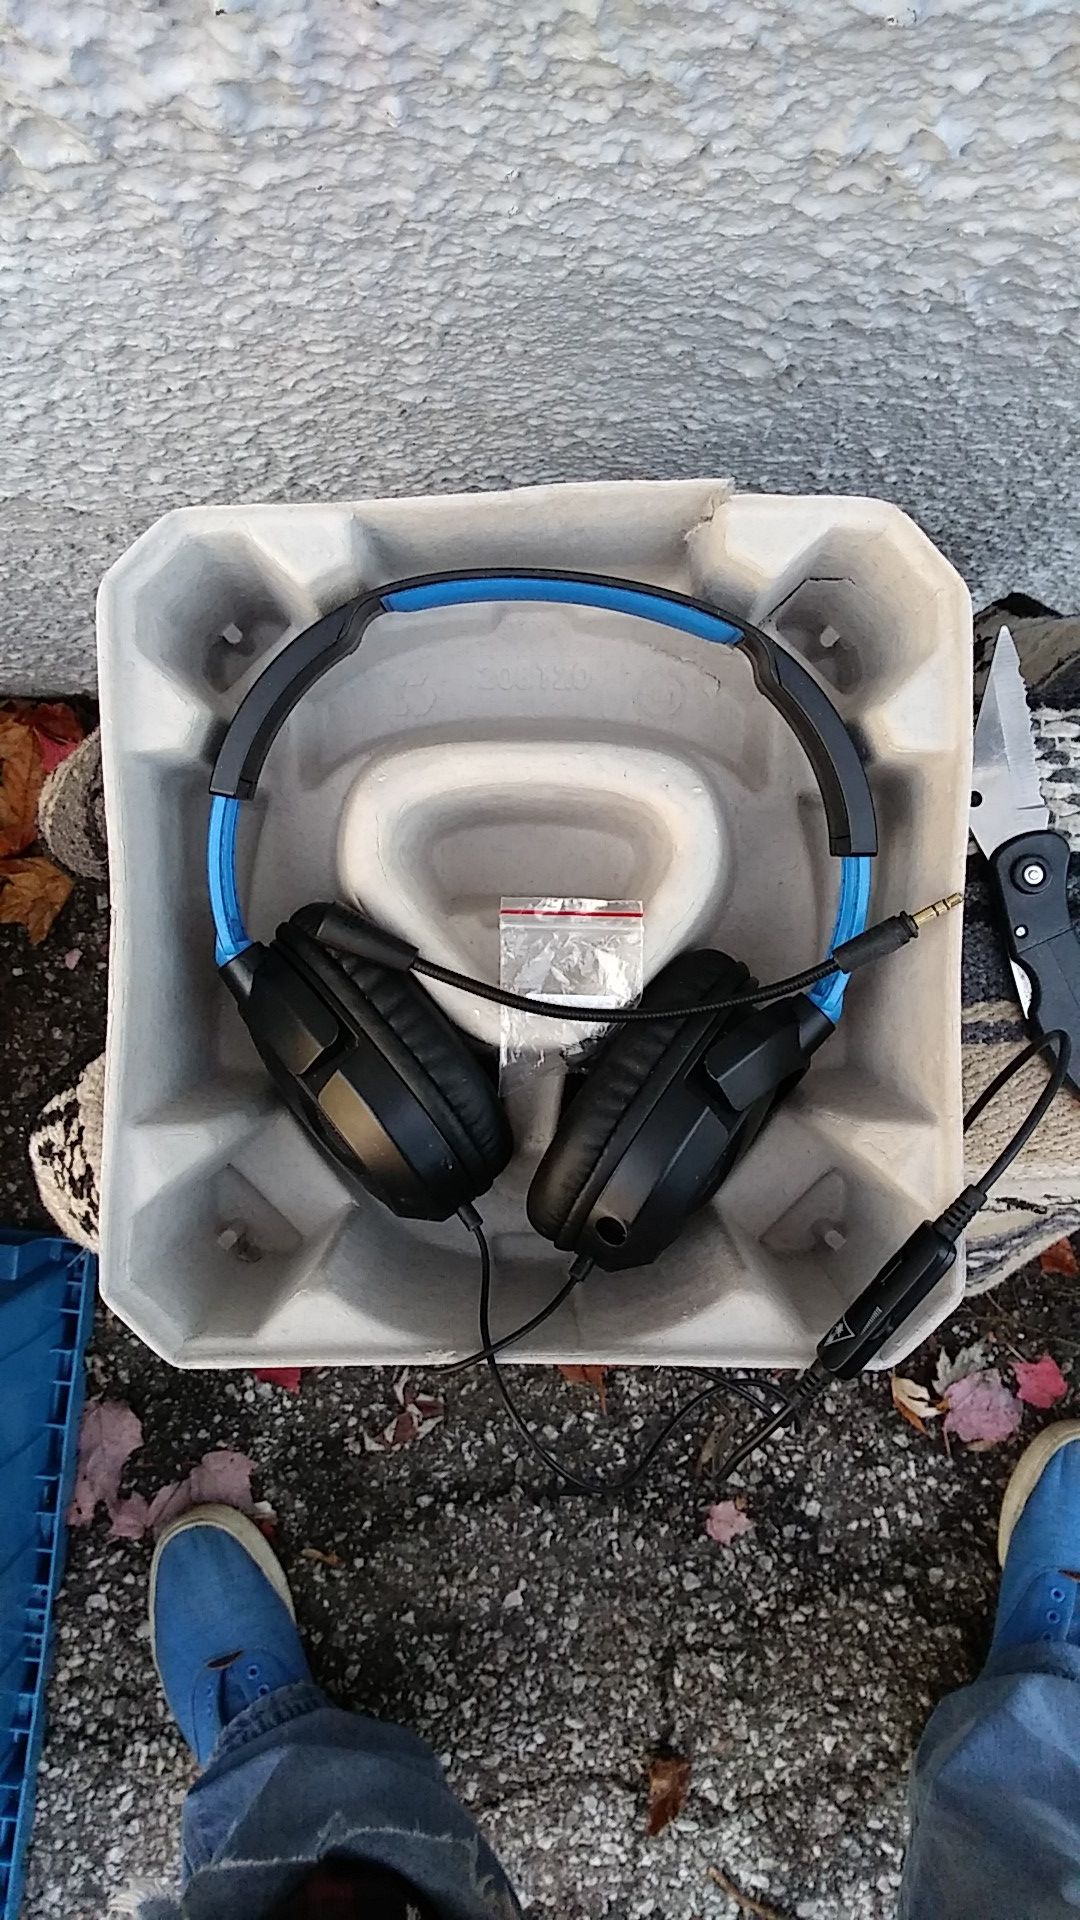 Turtle Beach gaming headphones